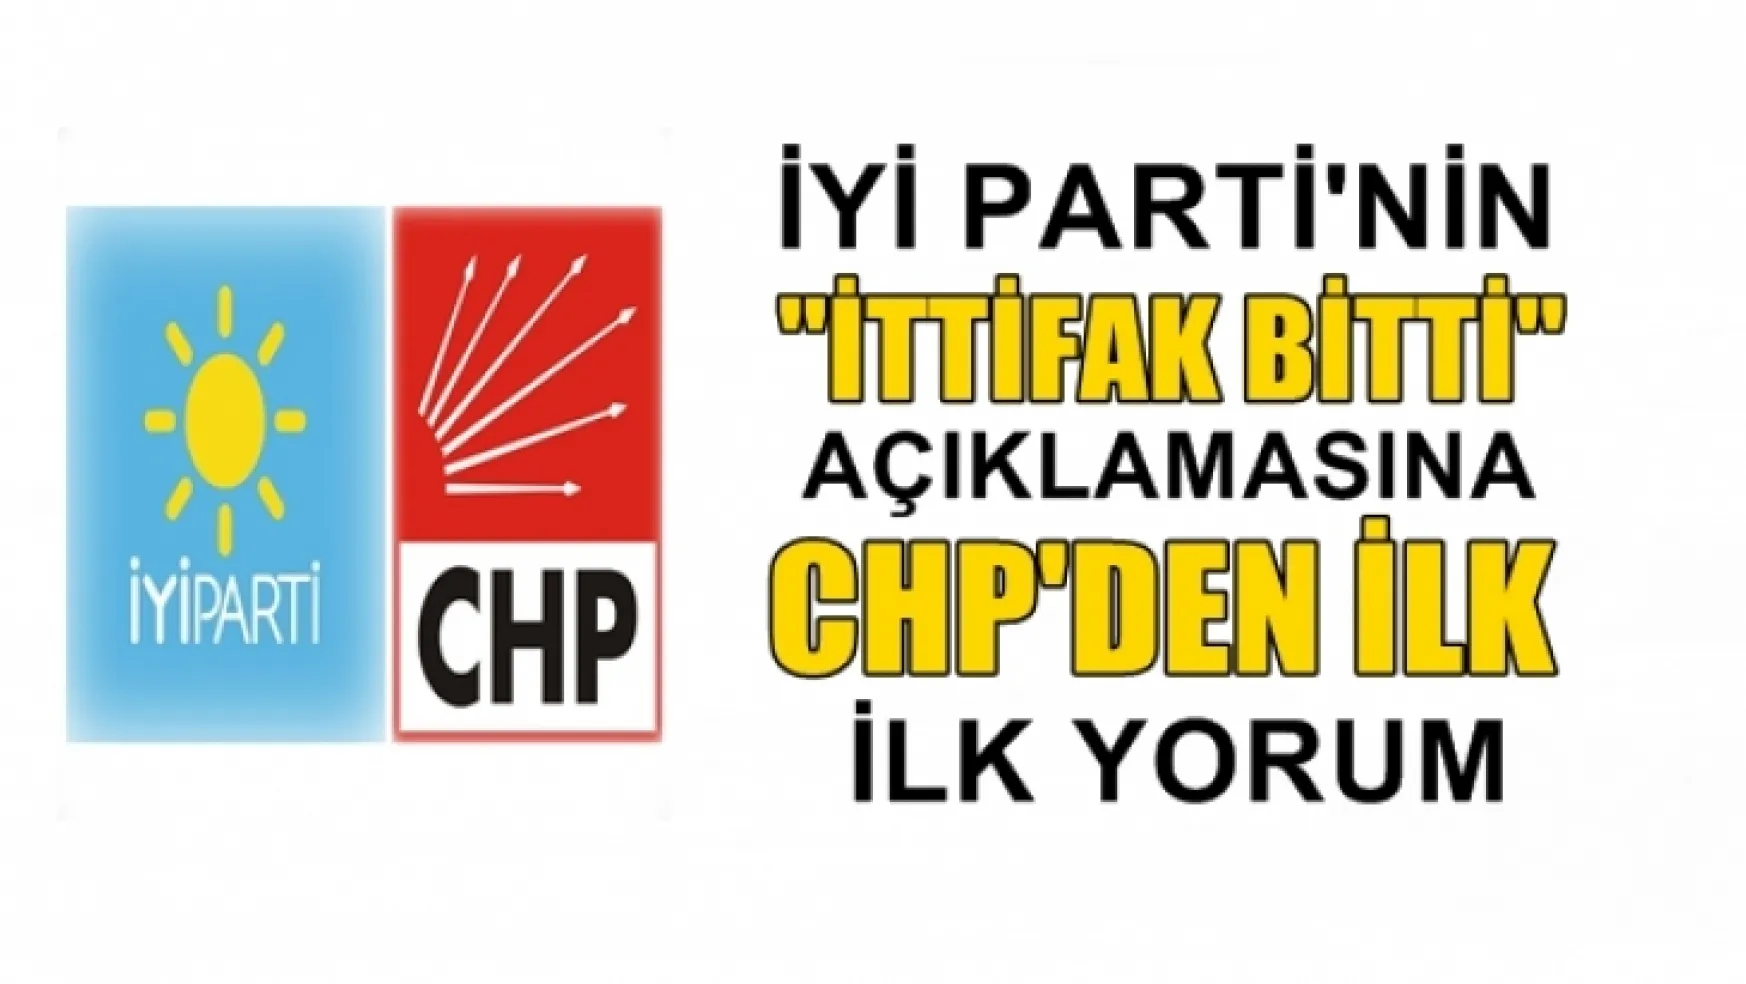 CHP'den İYİ Parti'nin 'İttifak bitti' açıklamasına ilk yorum